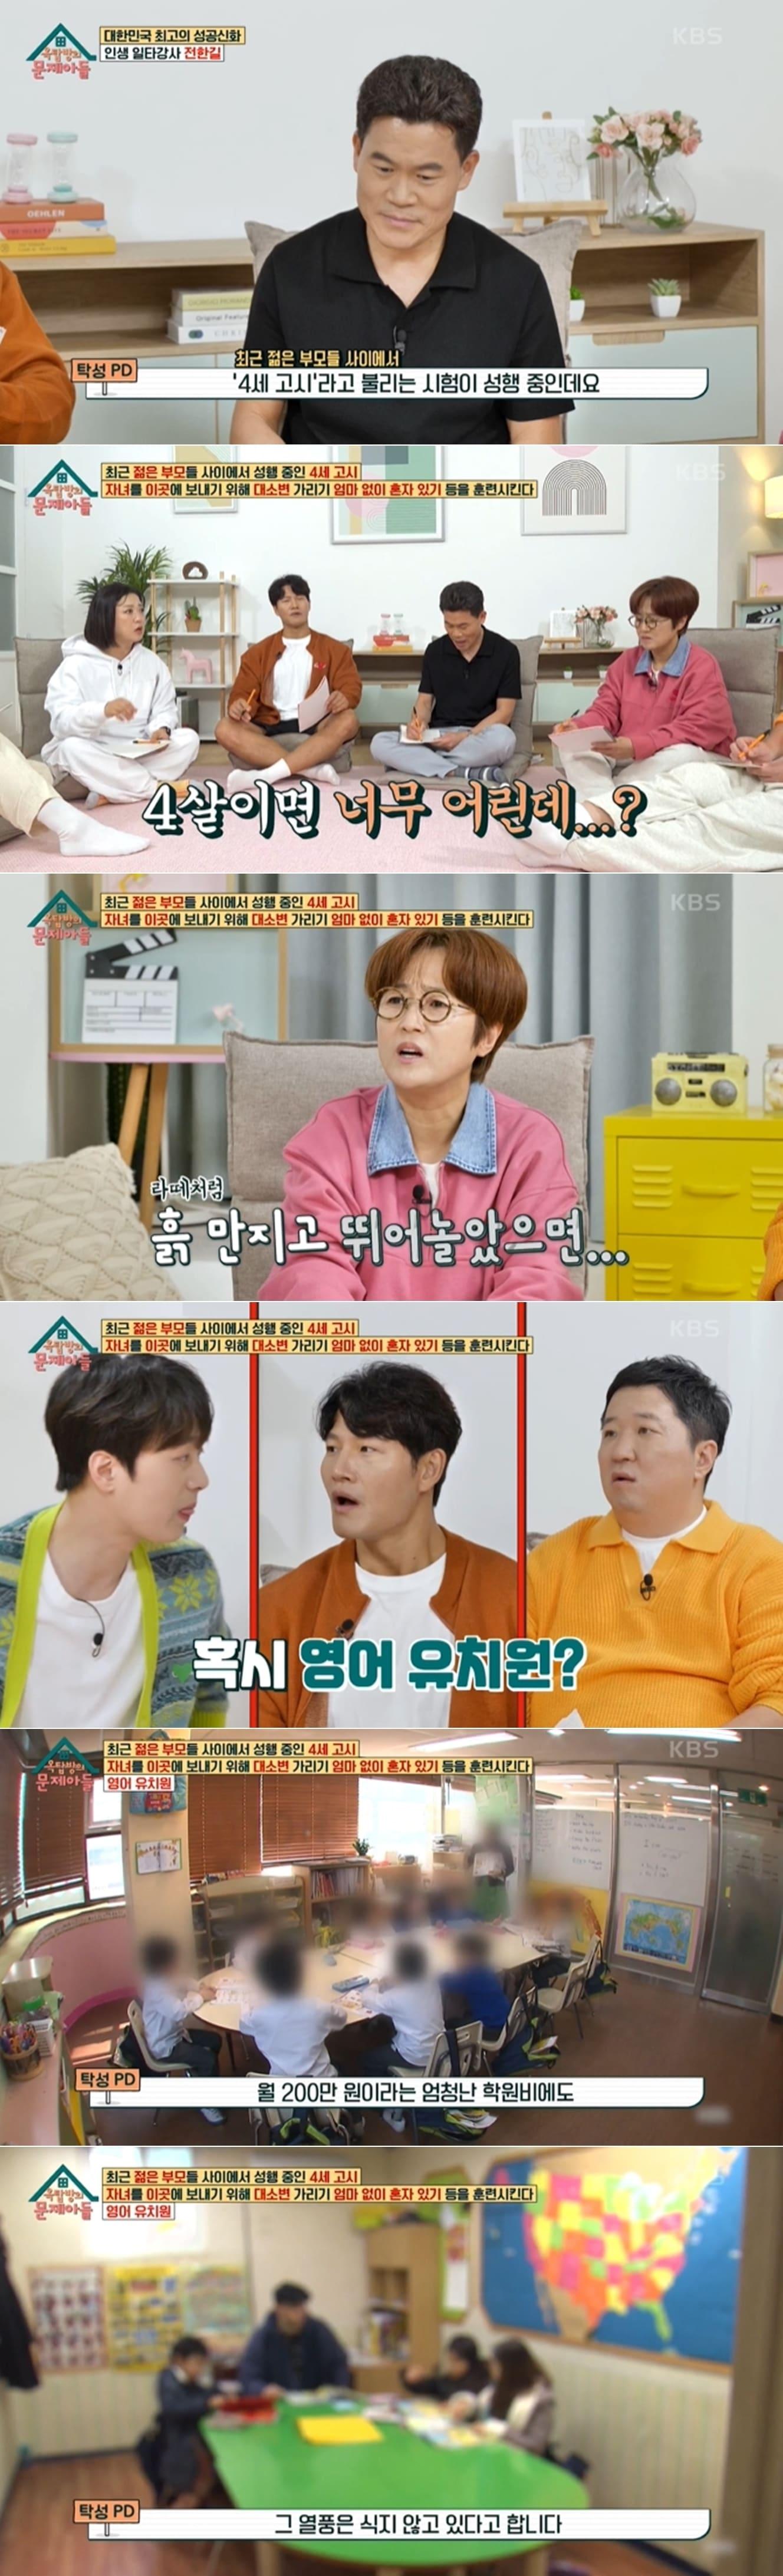 KBS 2TV 예능프로그램 &#39;옥탑방의 문제아들&#39; 방송 화면 갈무리